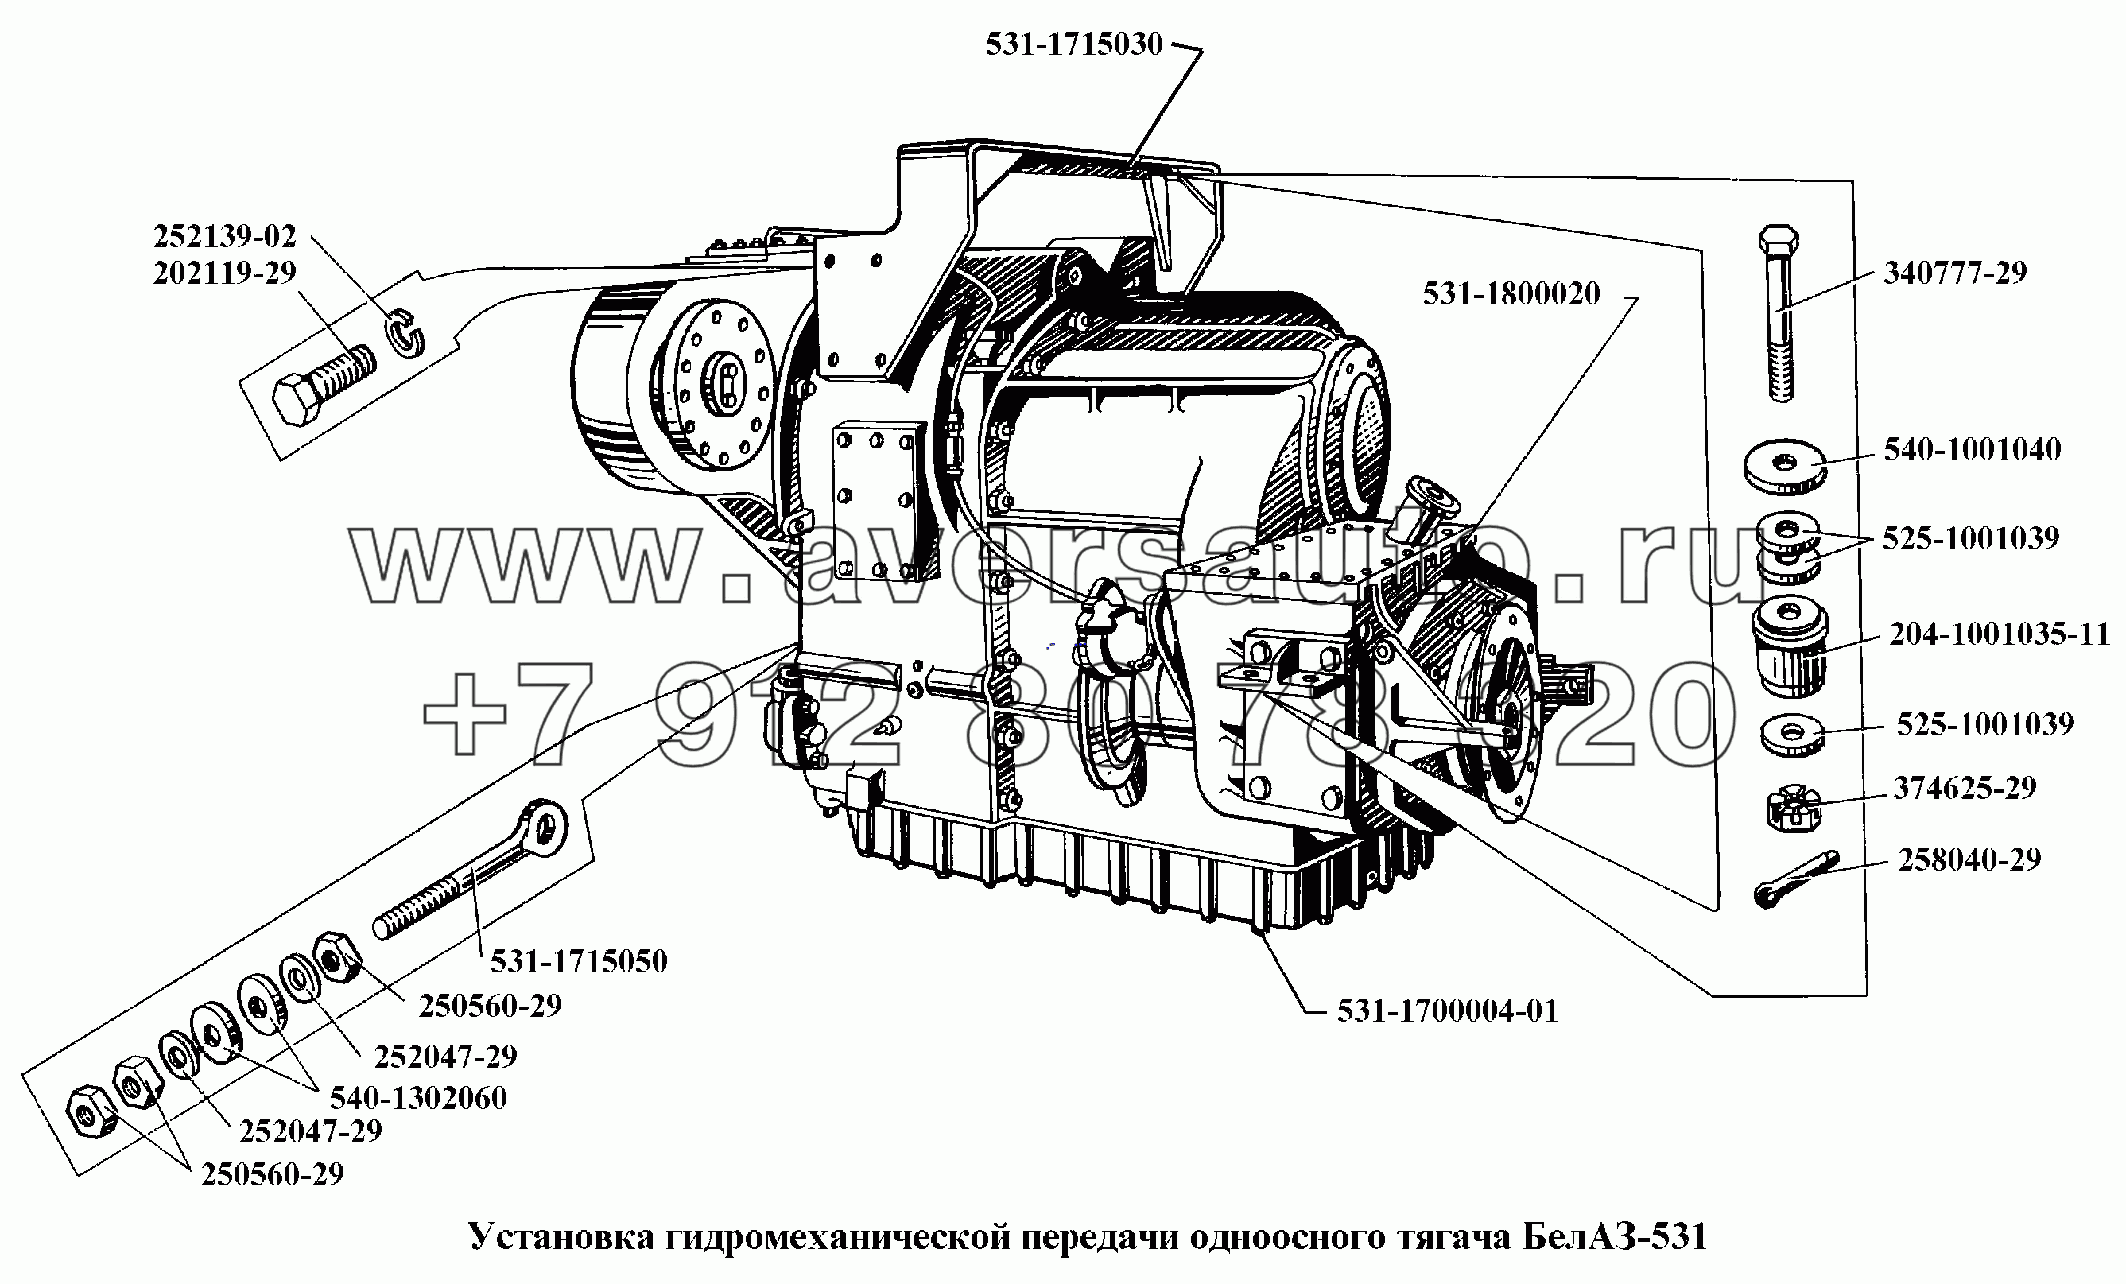 Установка гидромеханической передачи одноосного тягача БелАЗ-531